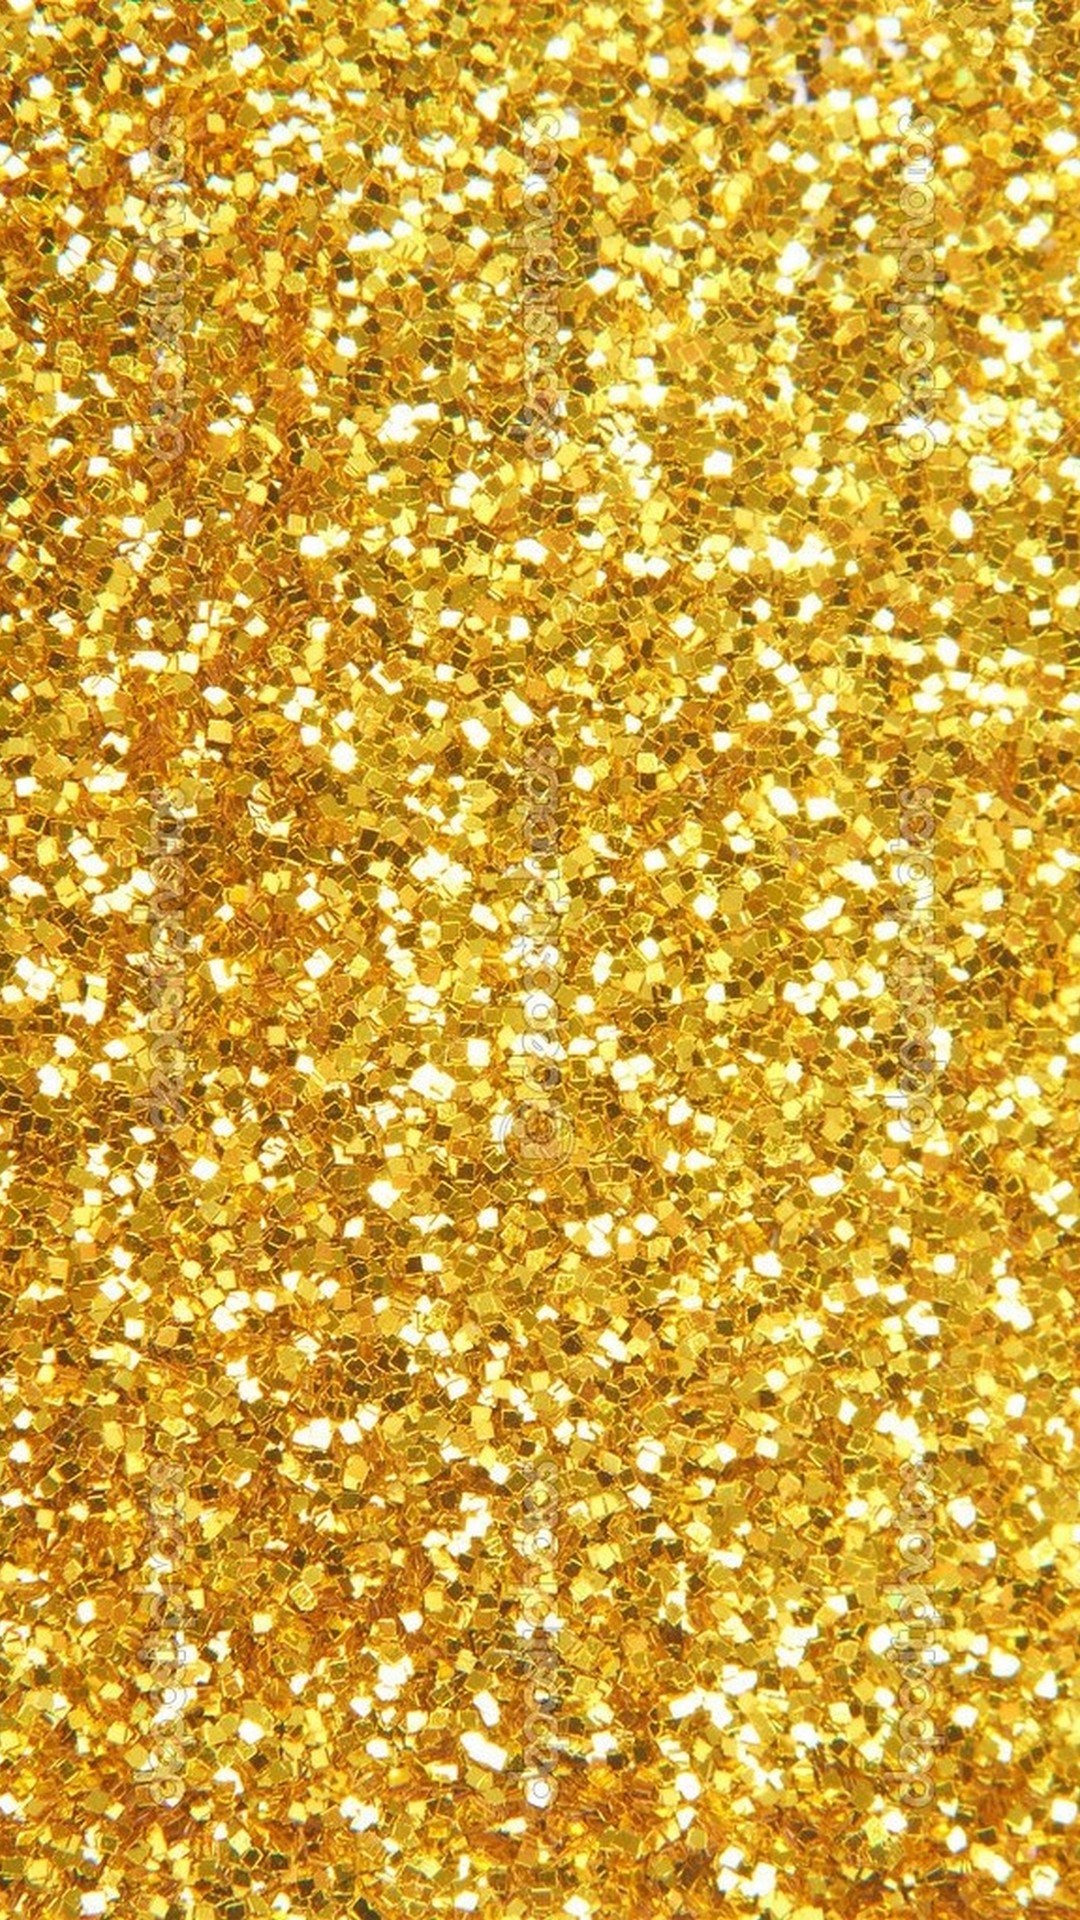 Iphone 7 Wallpaper Gold Glitter Resolution - Glitter Iphone Wallpapers Gold  - 1080x1920 Wallpaper 